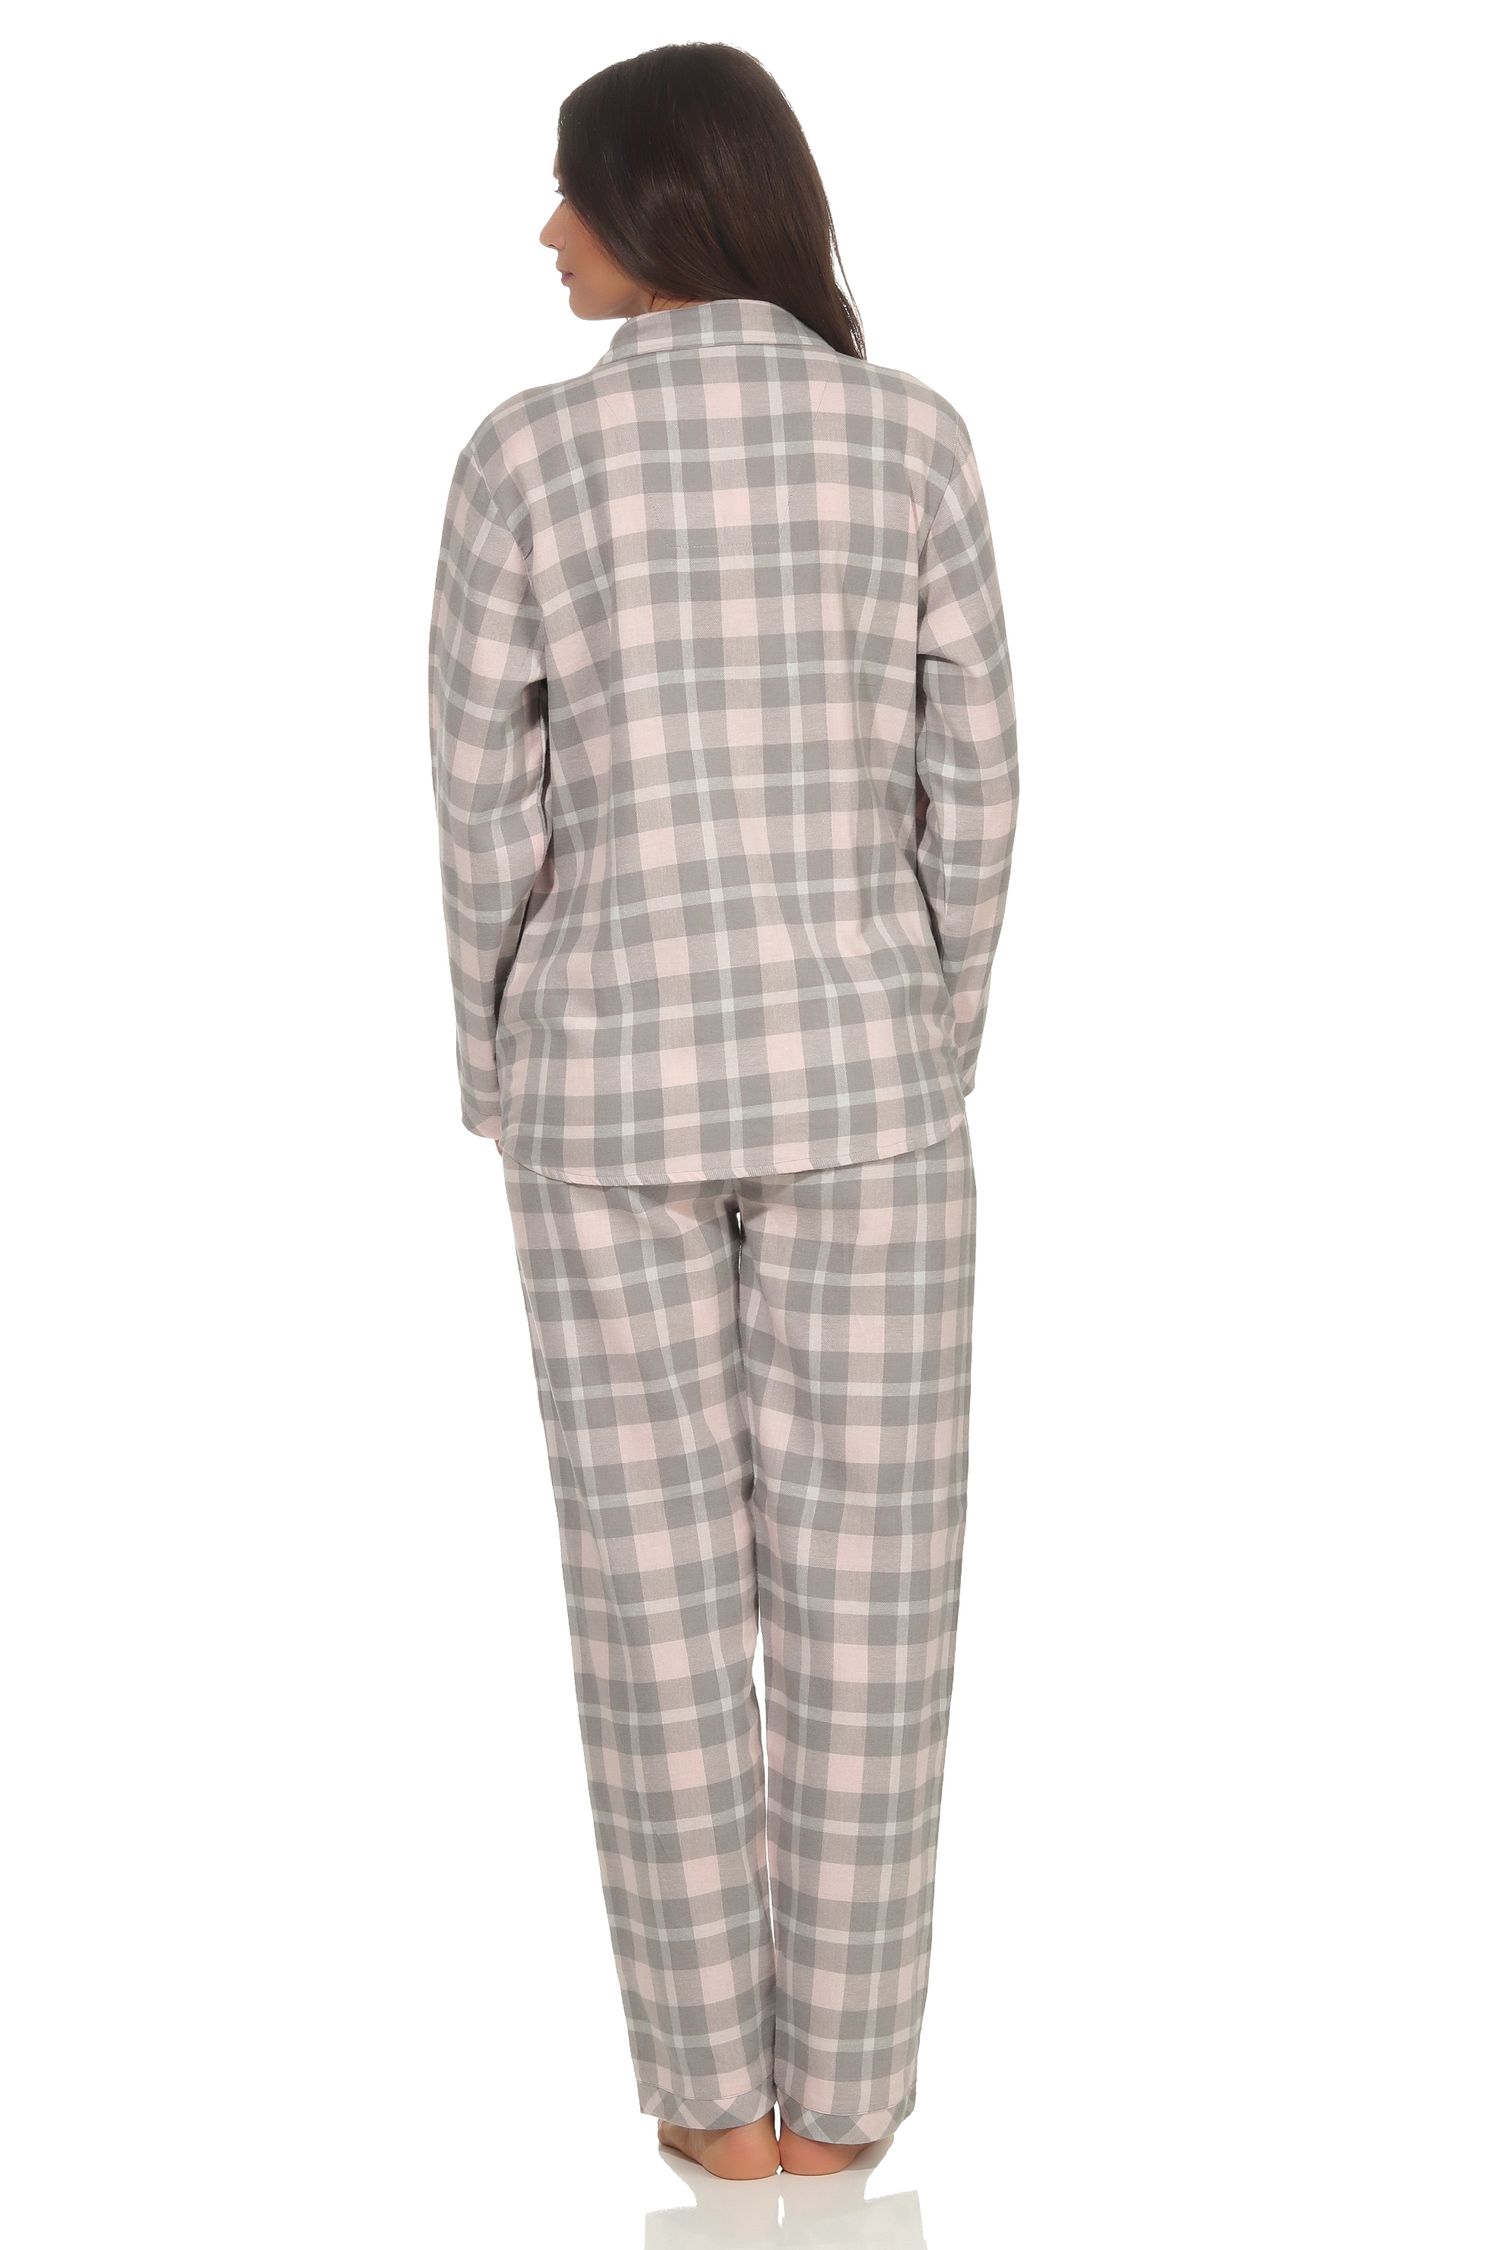 Damen Flanell Pyjama Schlafanzug kariert mit Knopfleiste und Hemdkragen - 291 201 15 556